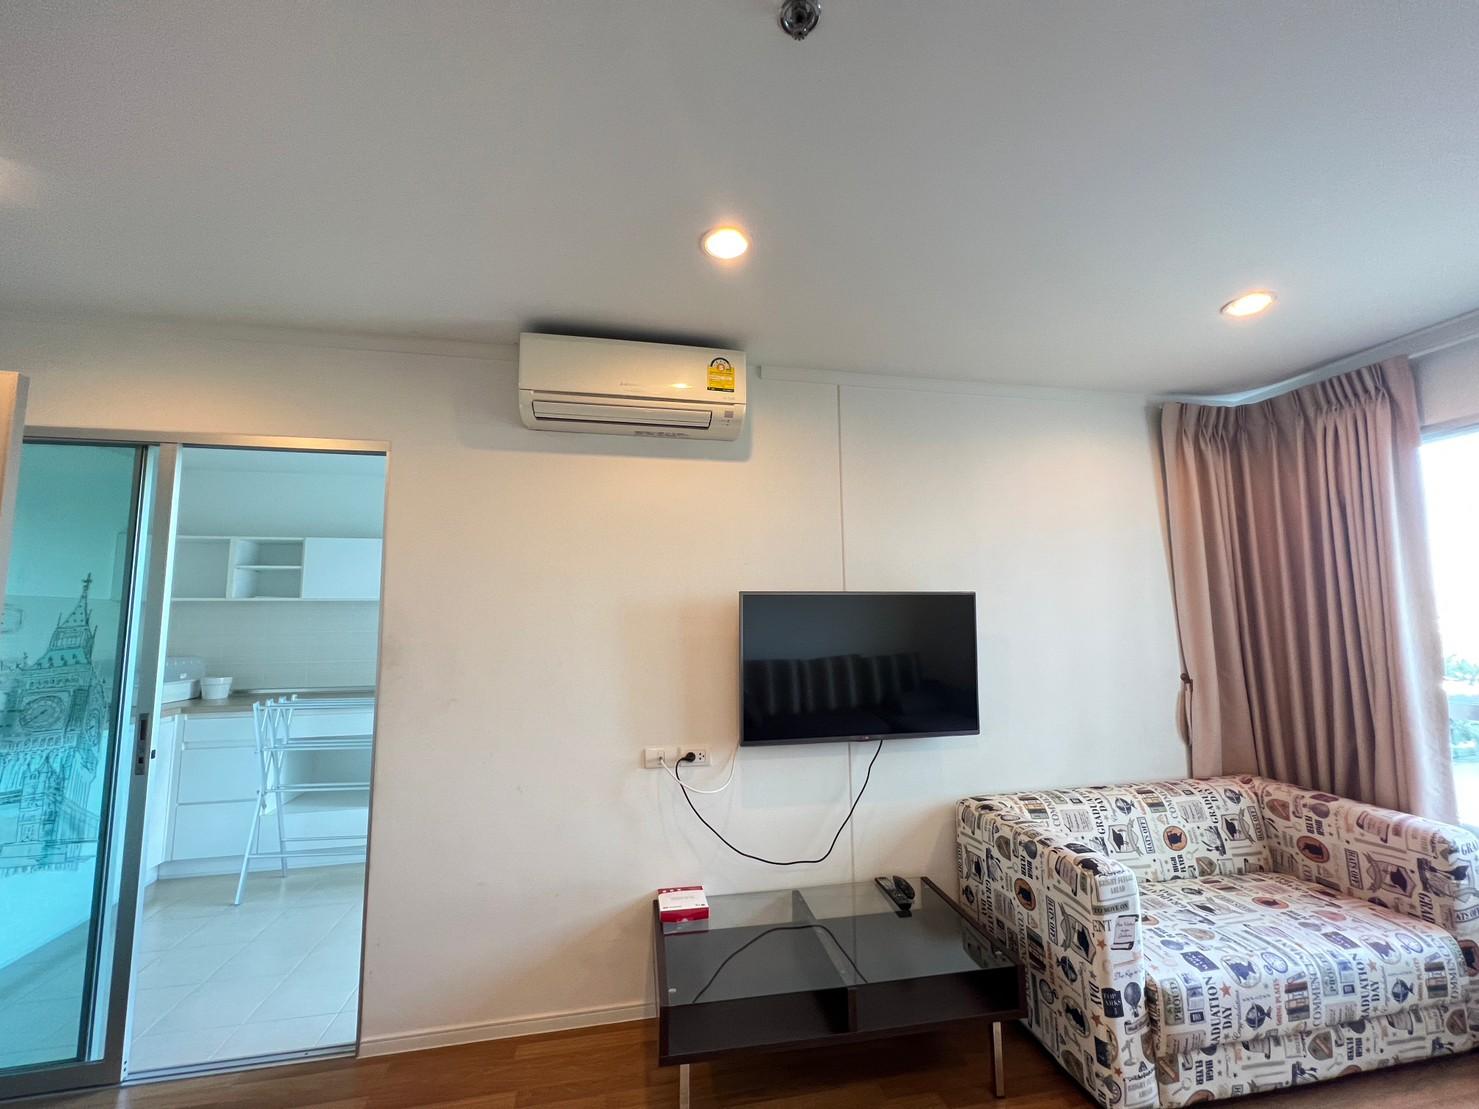 เช่าคอนโด ลุมพินี เพลส สุขสวัสดิ์ - พระราม2 คอนโดมิเนียม - Condo Rental Lumpini Place Suksawat - Rama2 condominium - 2645020